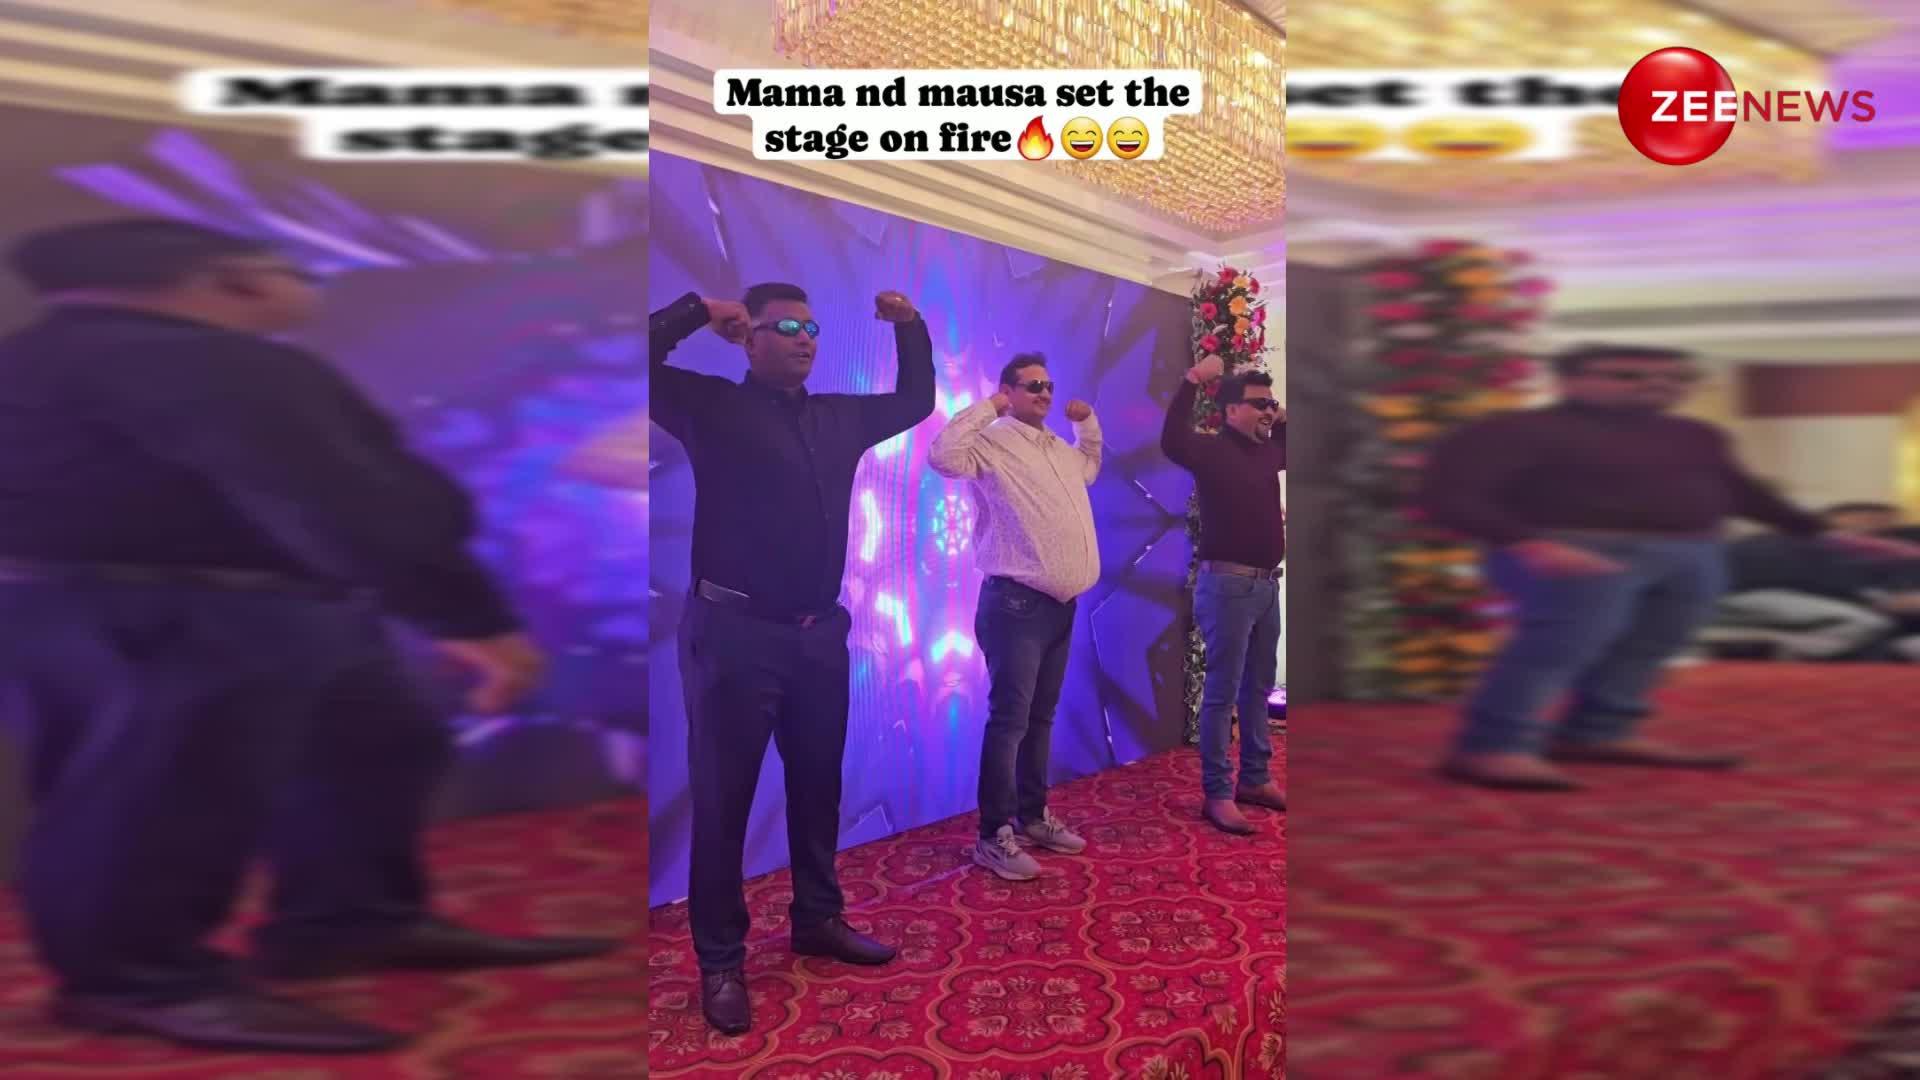 'पहला नशा' गाने पर मौसा और मामा ने किया इतना फनी डांस, देख बारातियों की छूटी हंसी; वायरल हुआ वीडियो